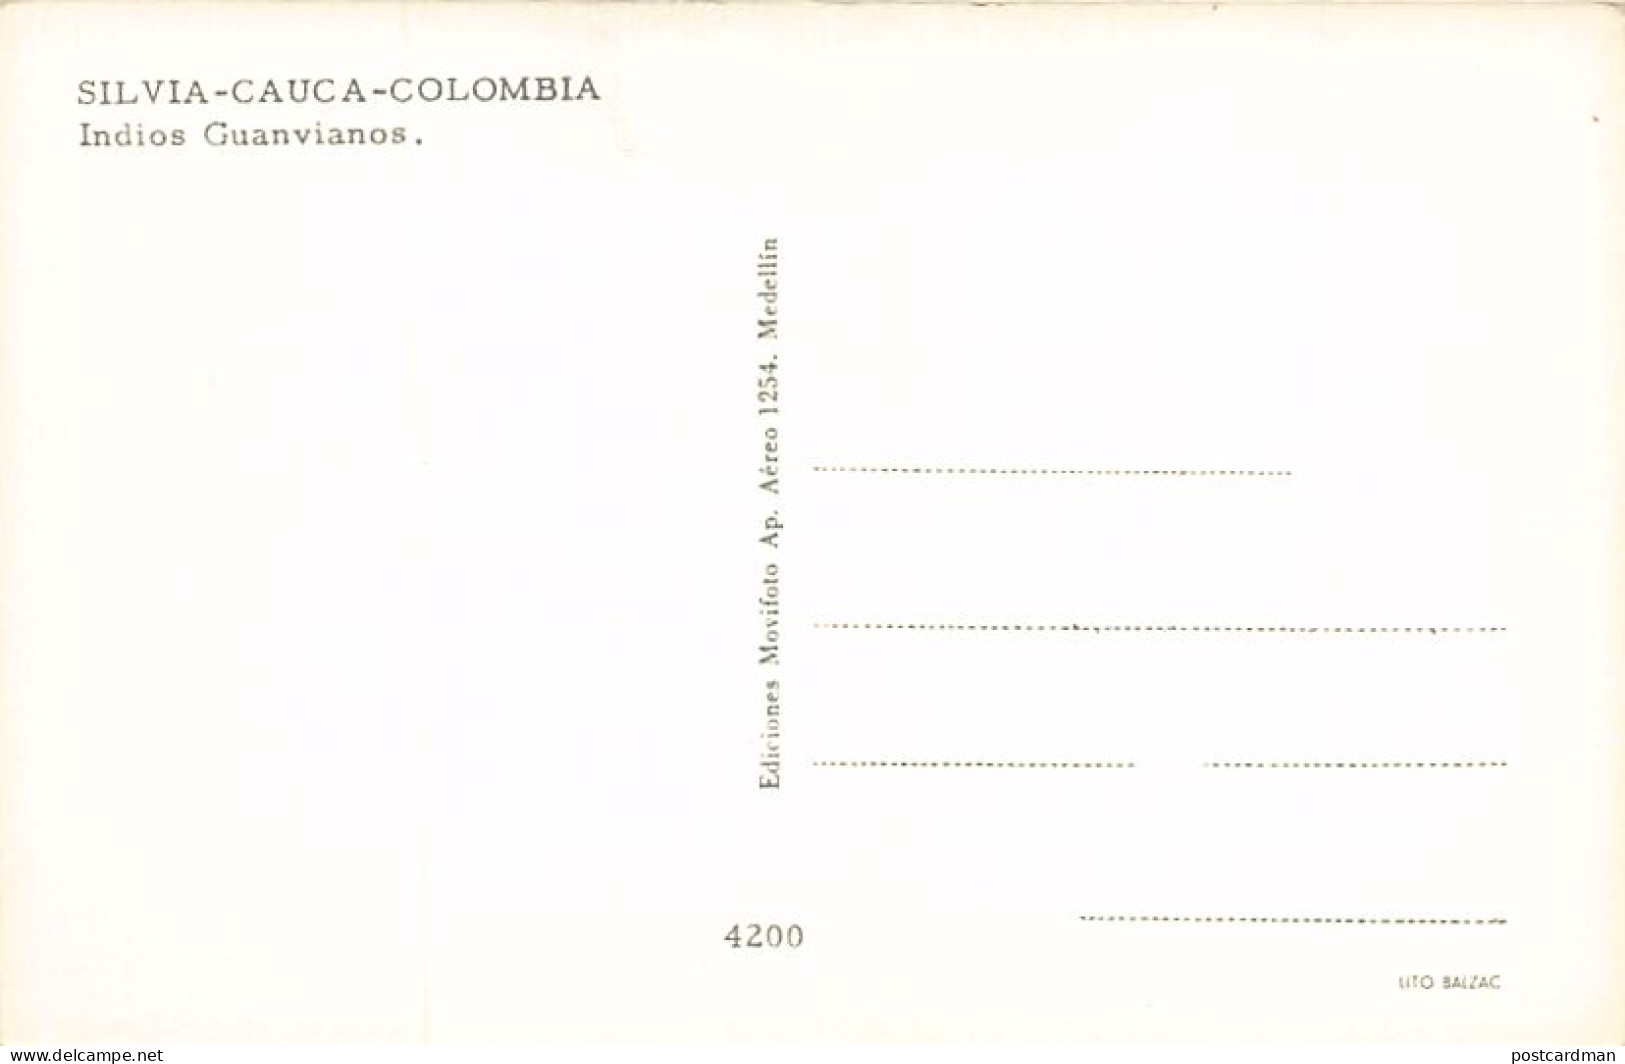 Colombia - SILVIA (Cauca) - Indios Guanvianos - Ed. Movifoto 4200 - Colombie